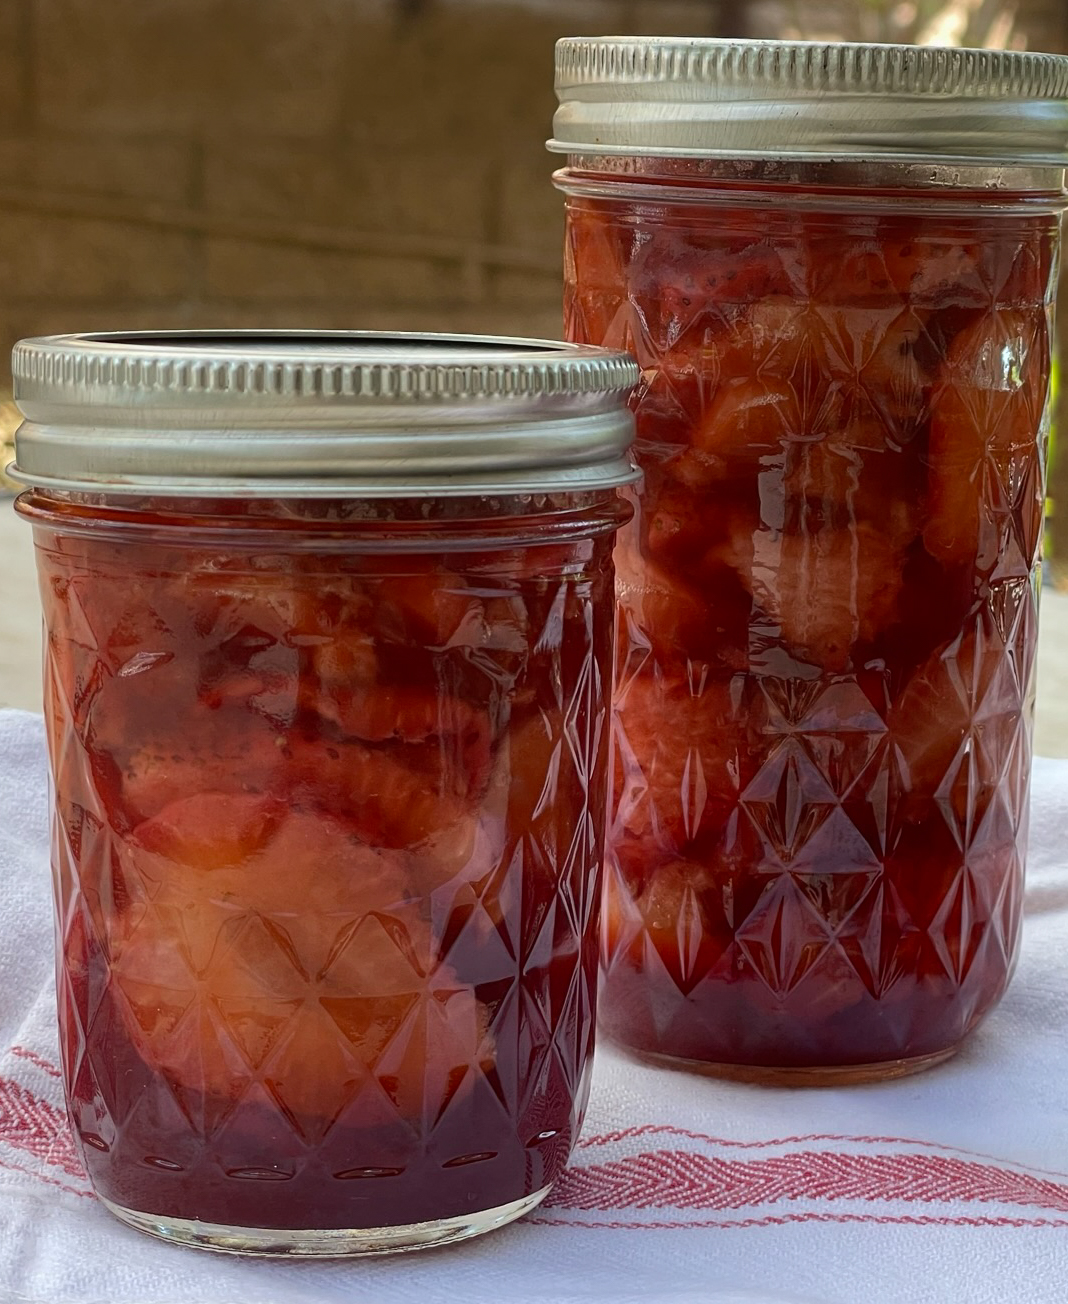 Low sugar strawberry rhubarb preserves in jar